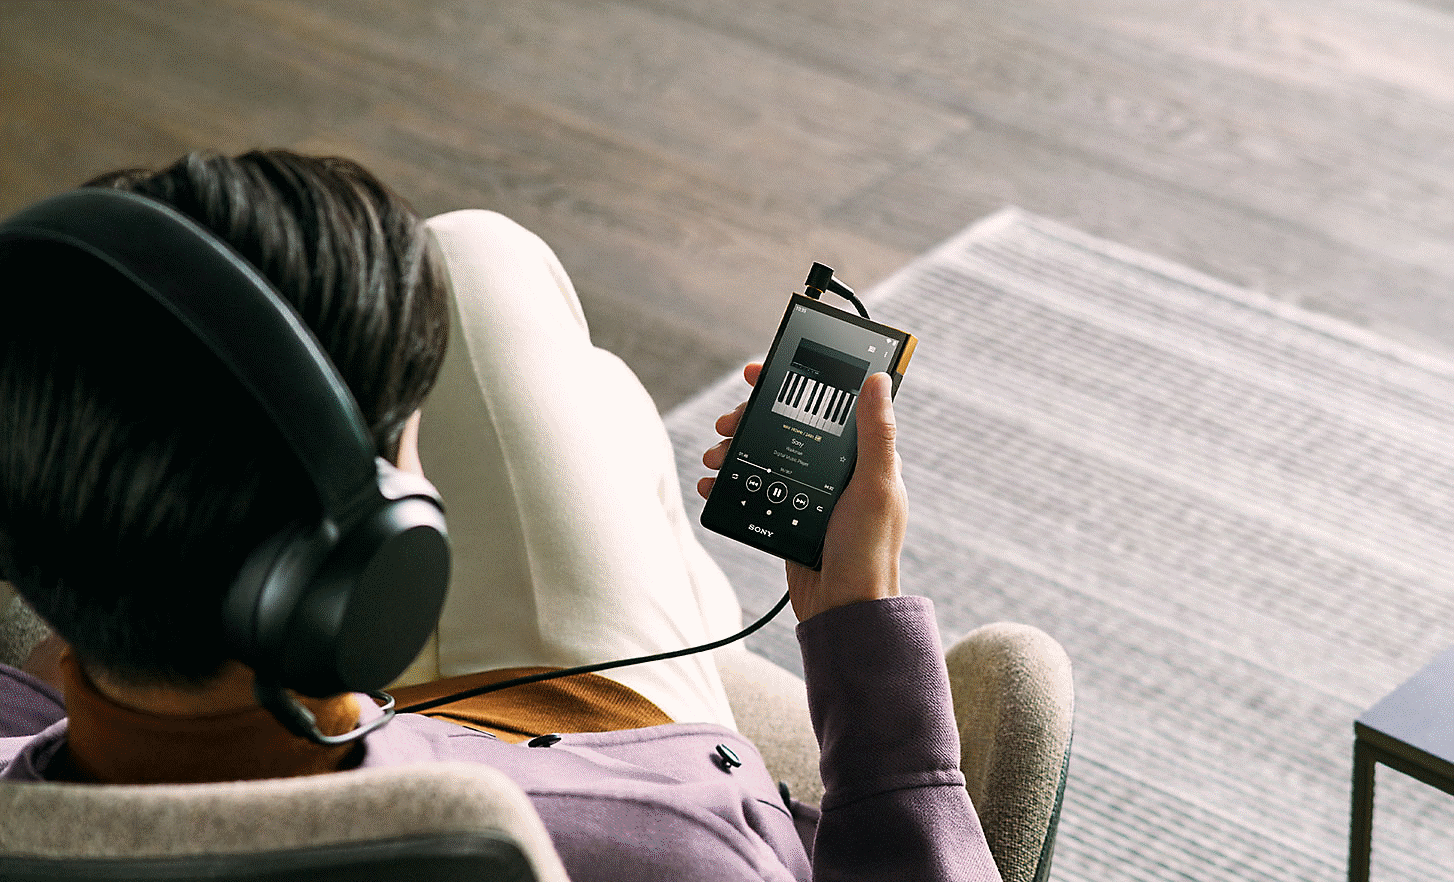 Une image d'une personne tenant le NW-ZX707 et écoutant de la musique avec son casque Sony.